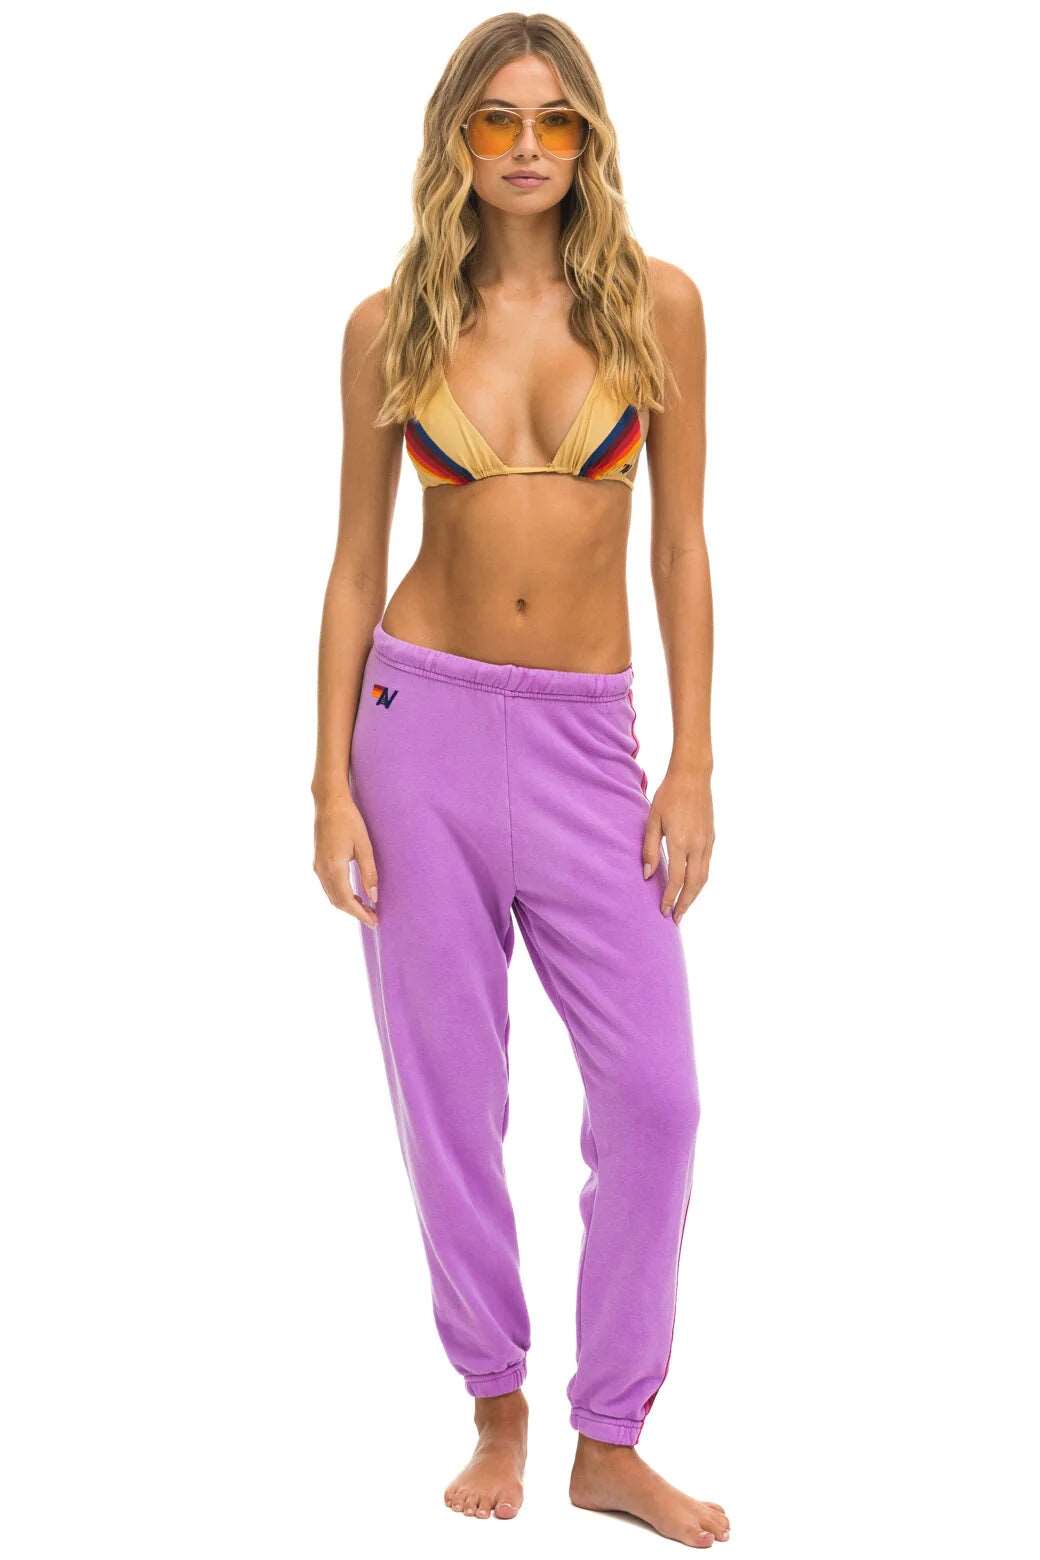 Aviator Nation 5 Stripe Women's Neon Purple Pink Purple Sweatpants